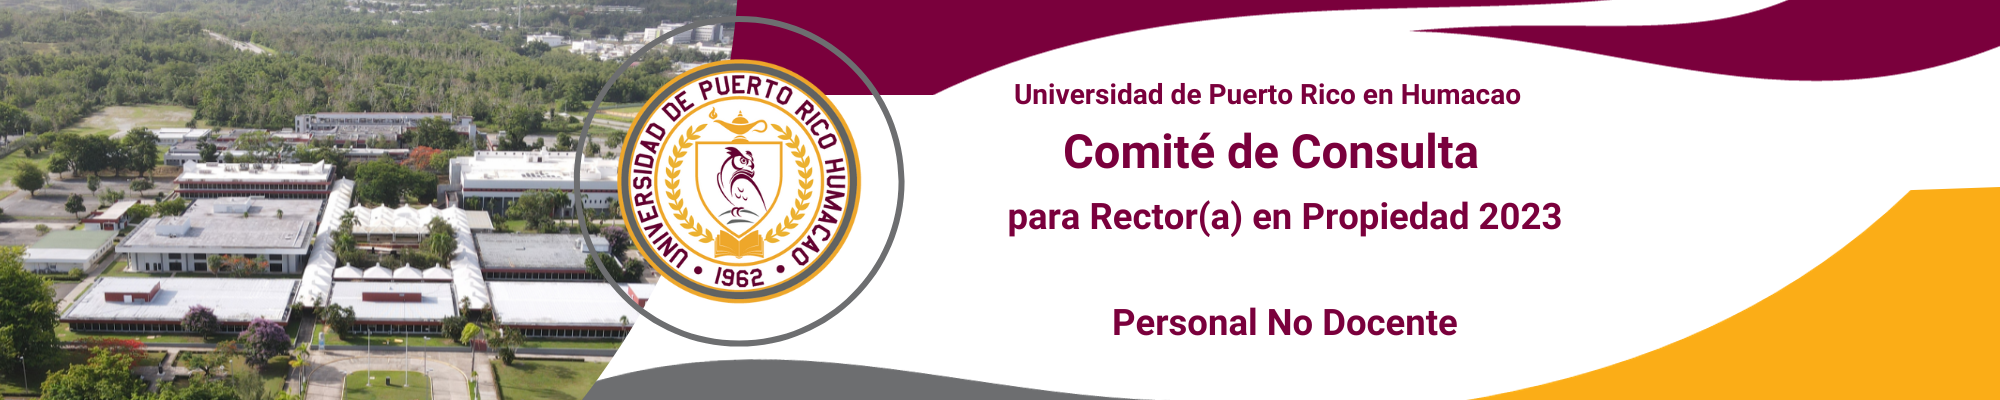 Comite No docente Consulta Rector 2023